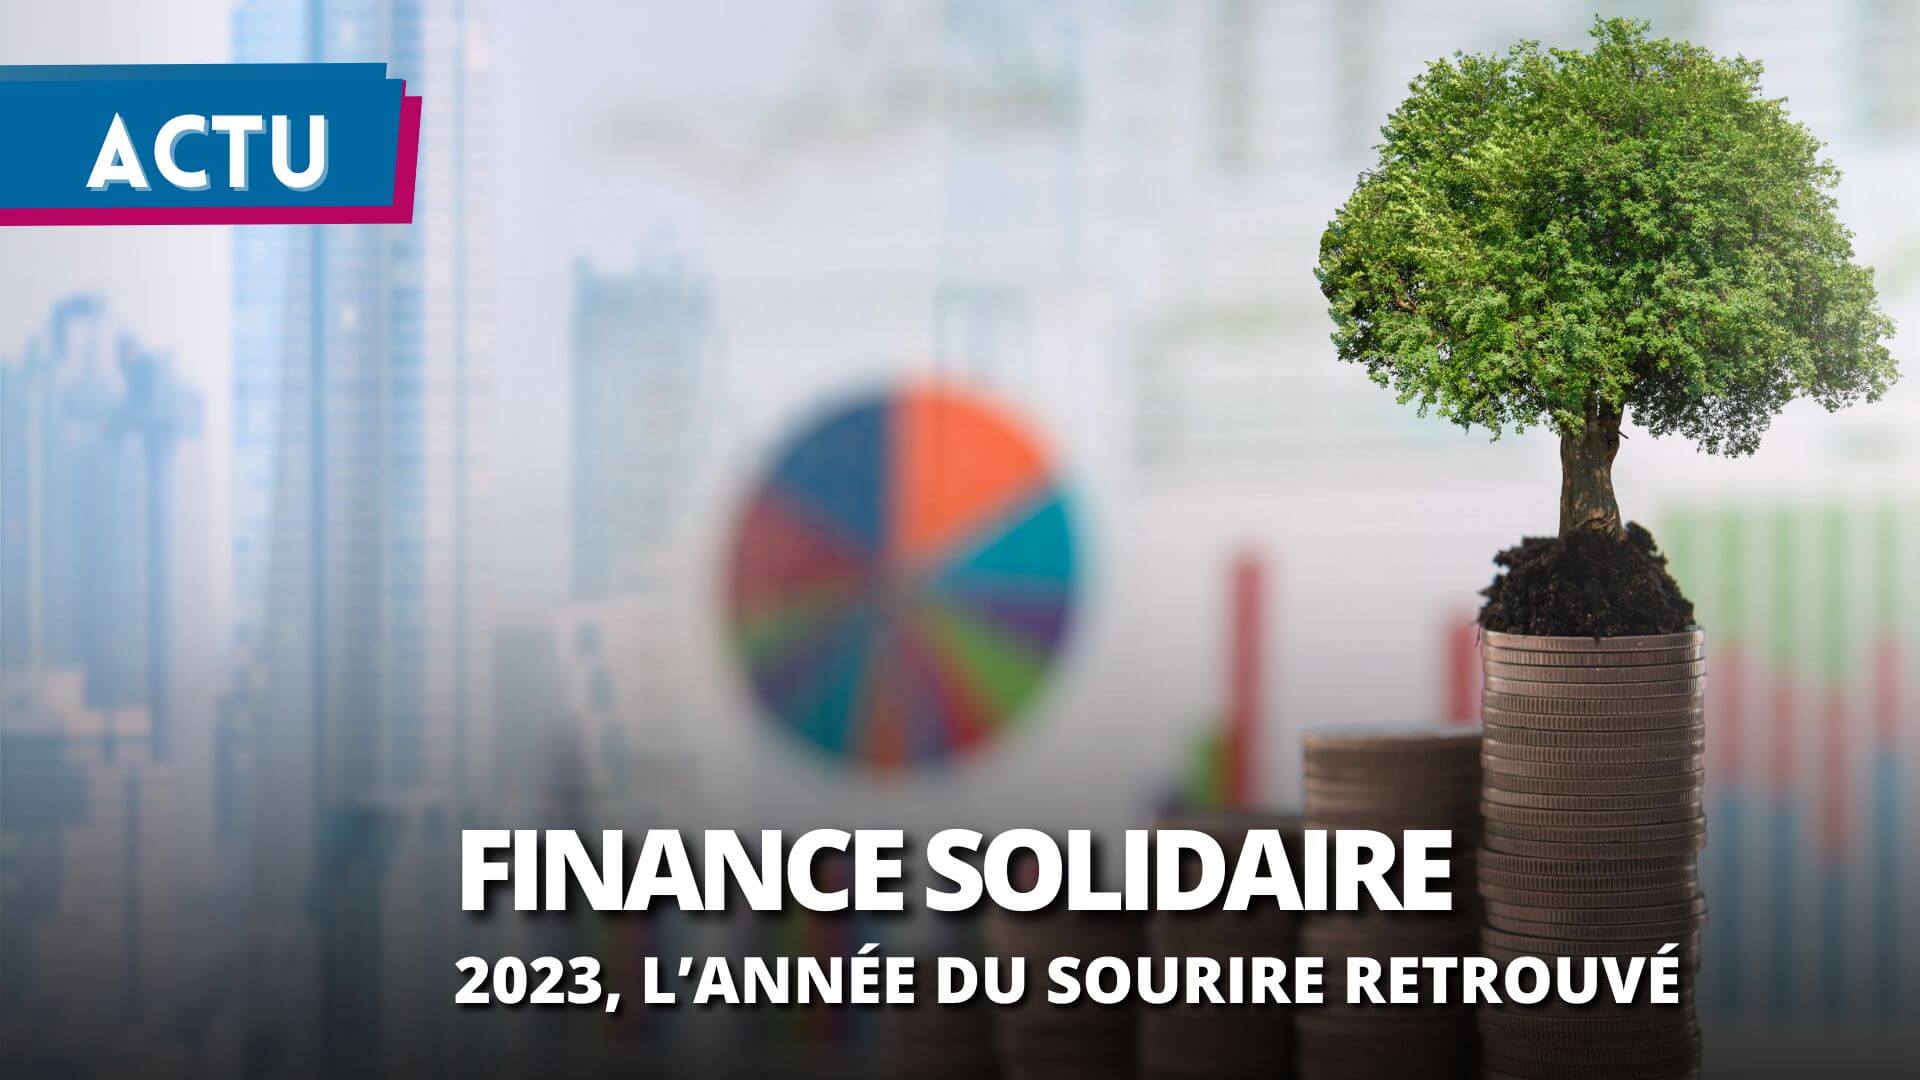 La finance solidaire affiche une reprise dynamique en 2023